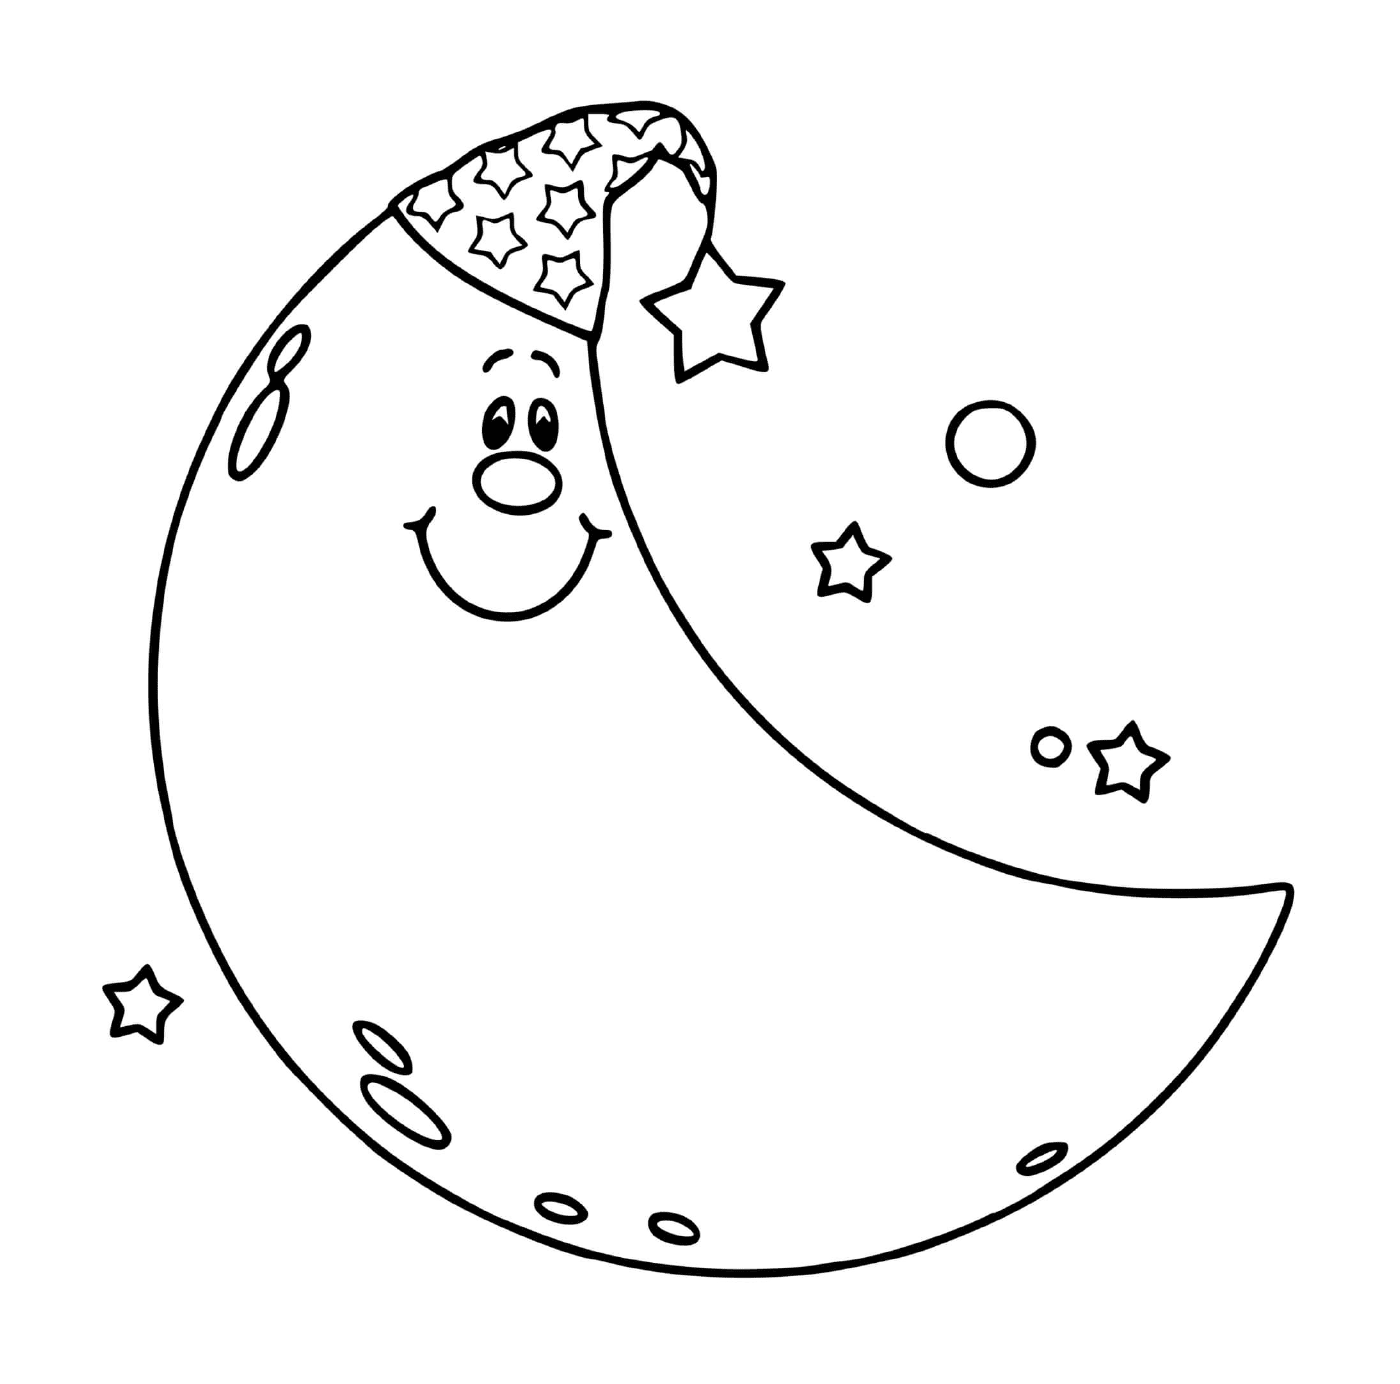  Meia lua pronta para dormir com estrelas 